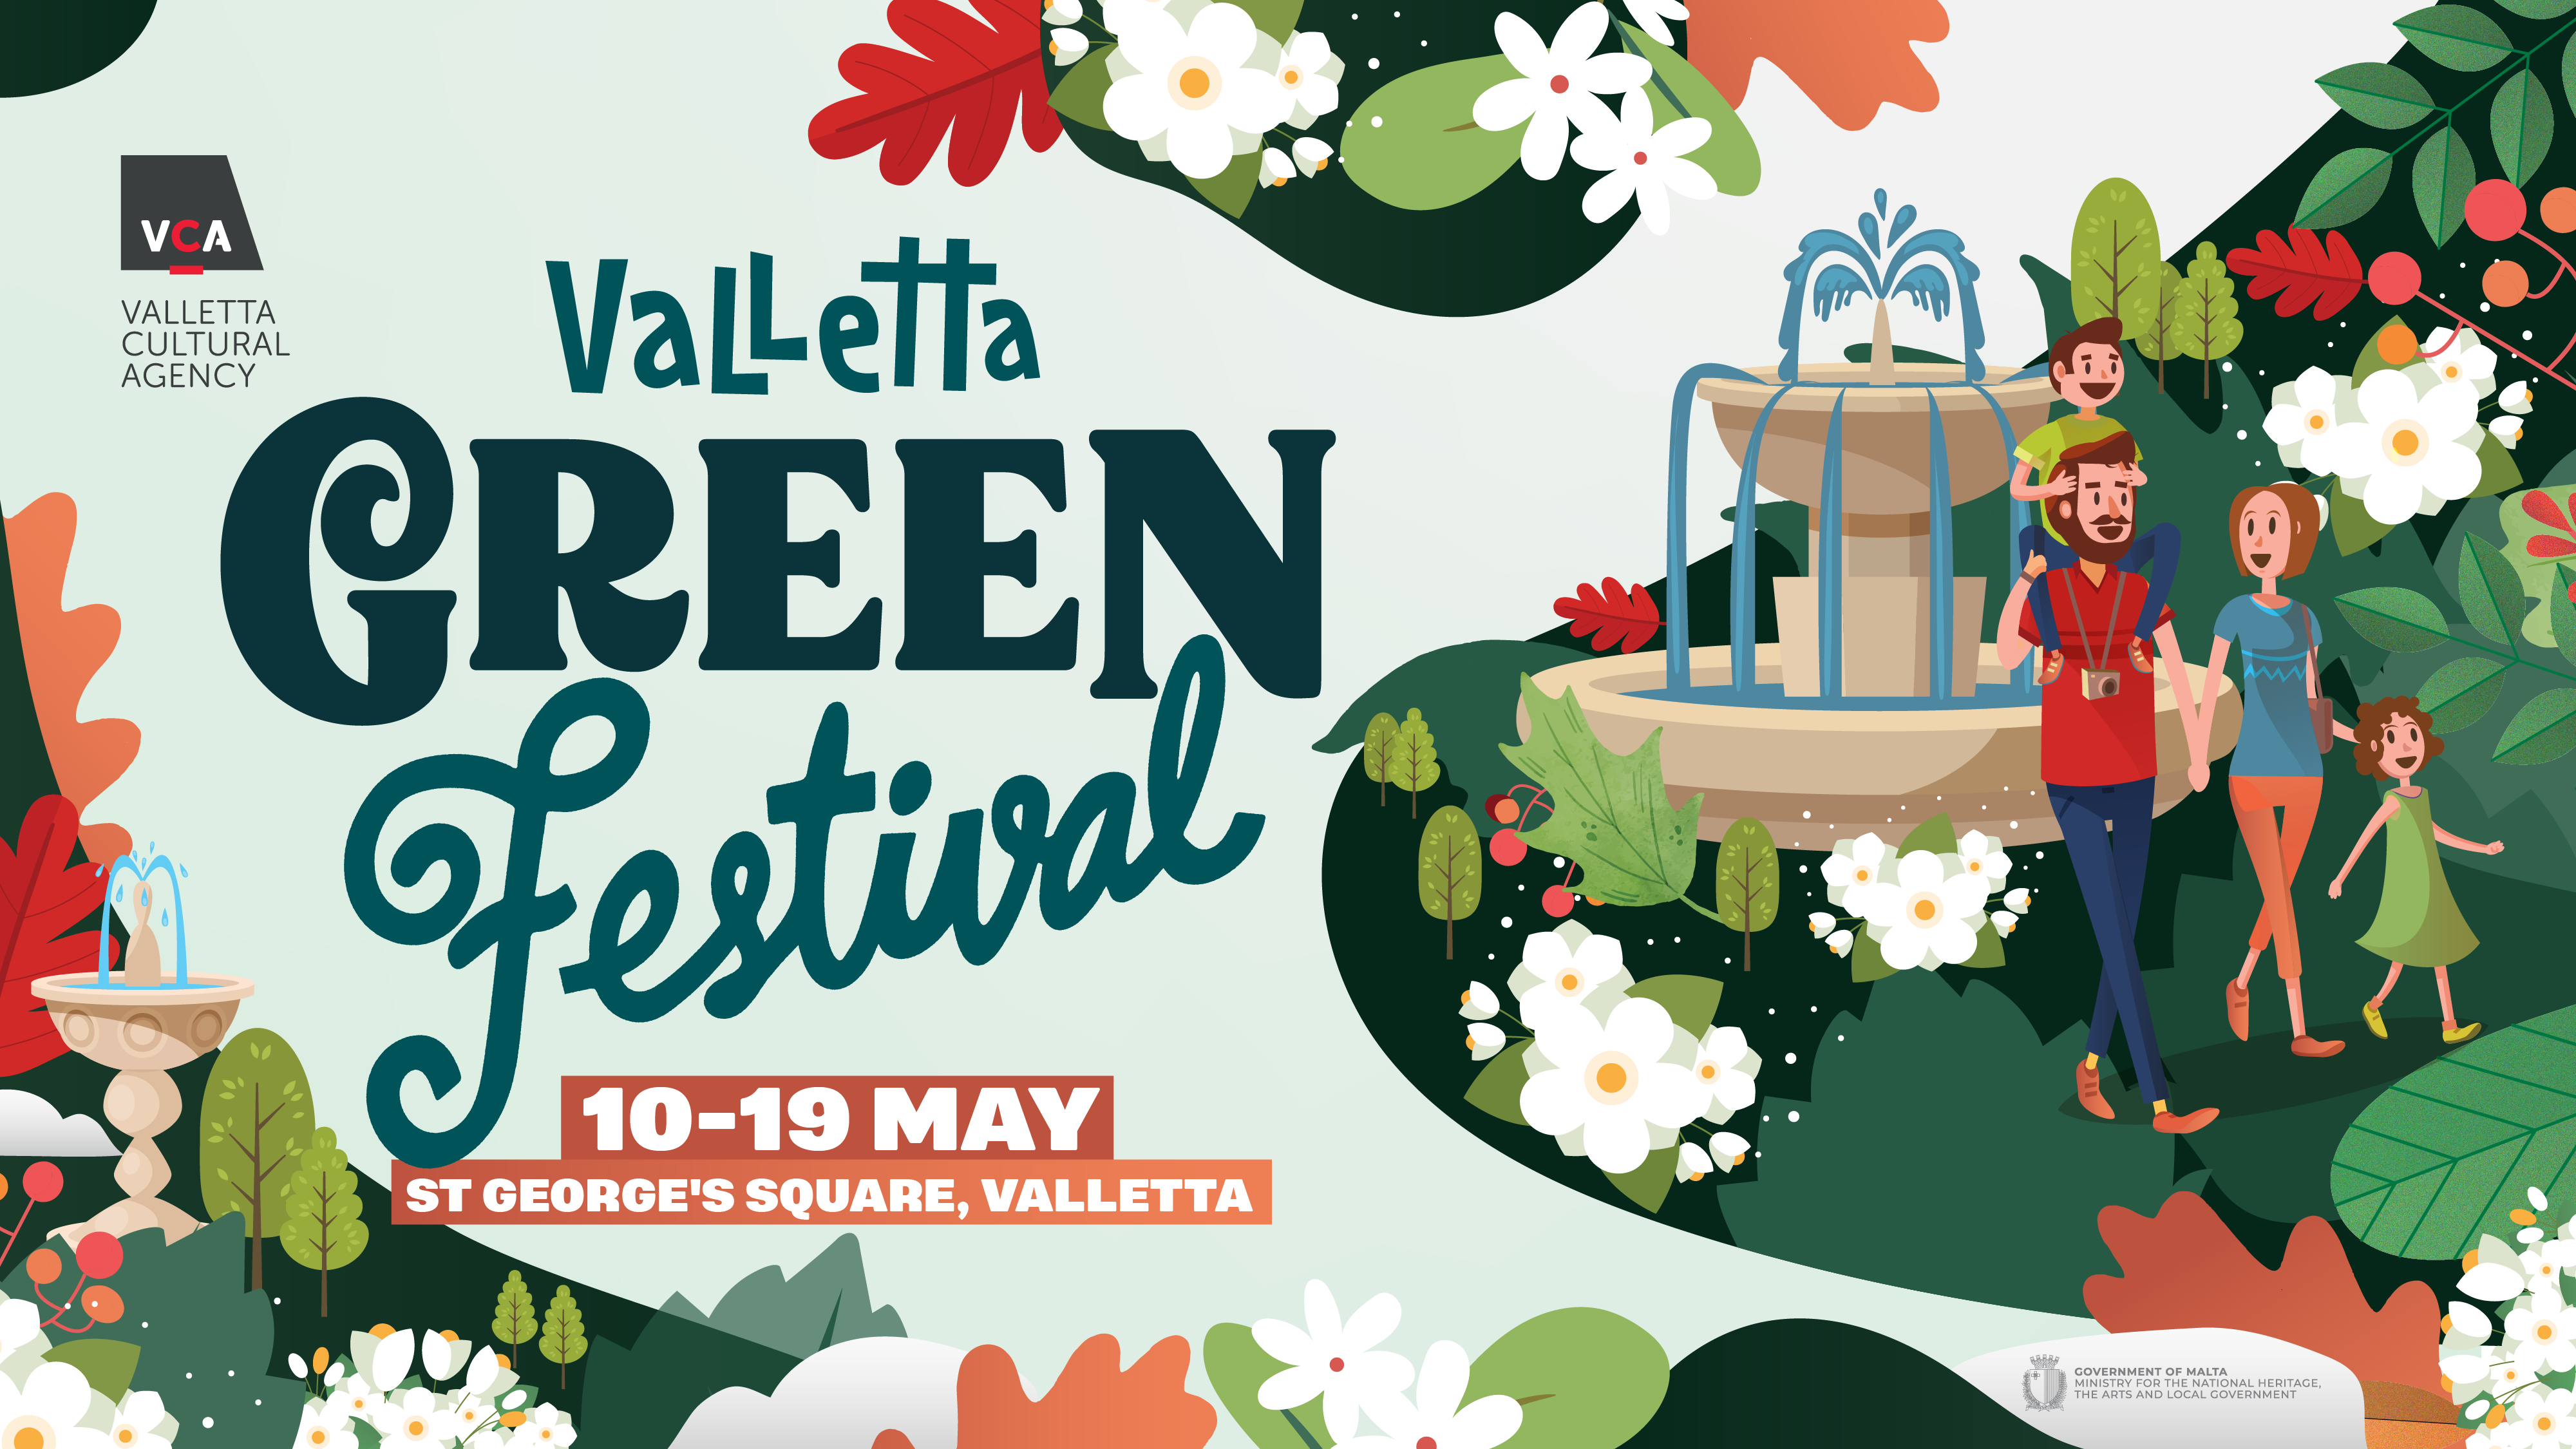 Valletta Green Festival